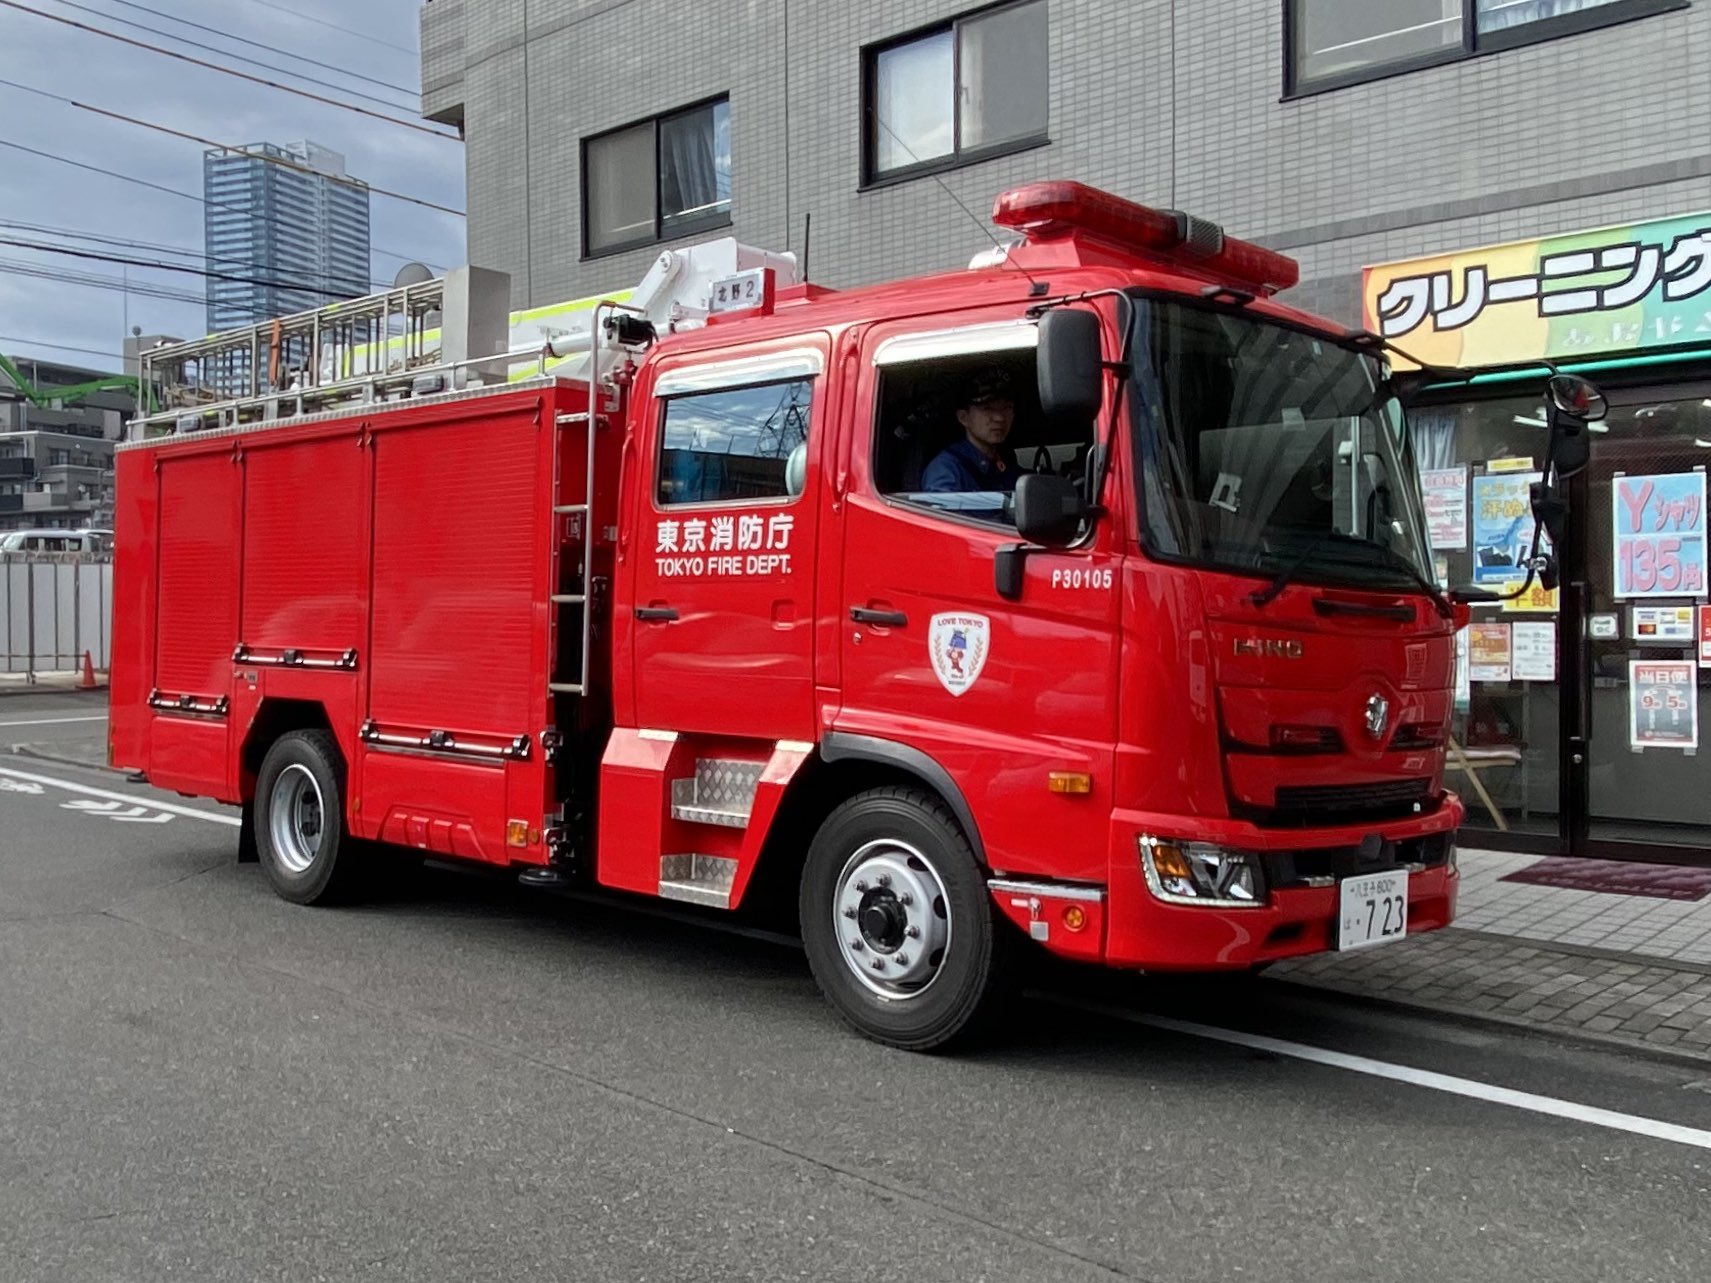 东京消防厅的日野浏览:178收藏:0支持:2上传时间:2020